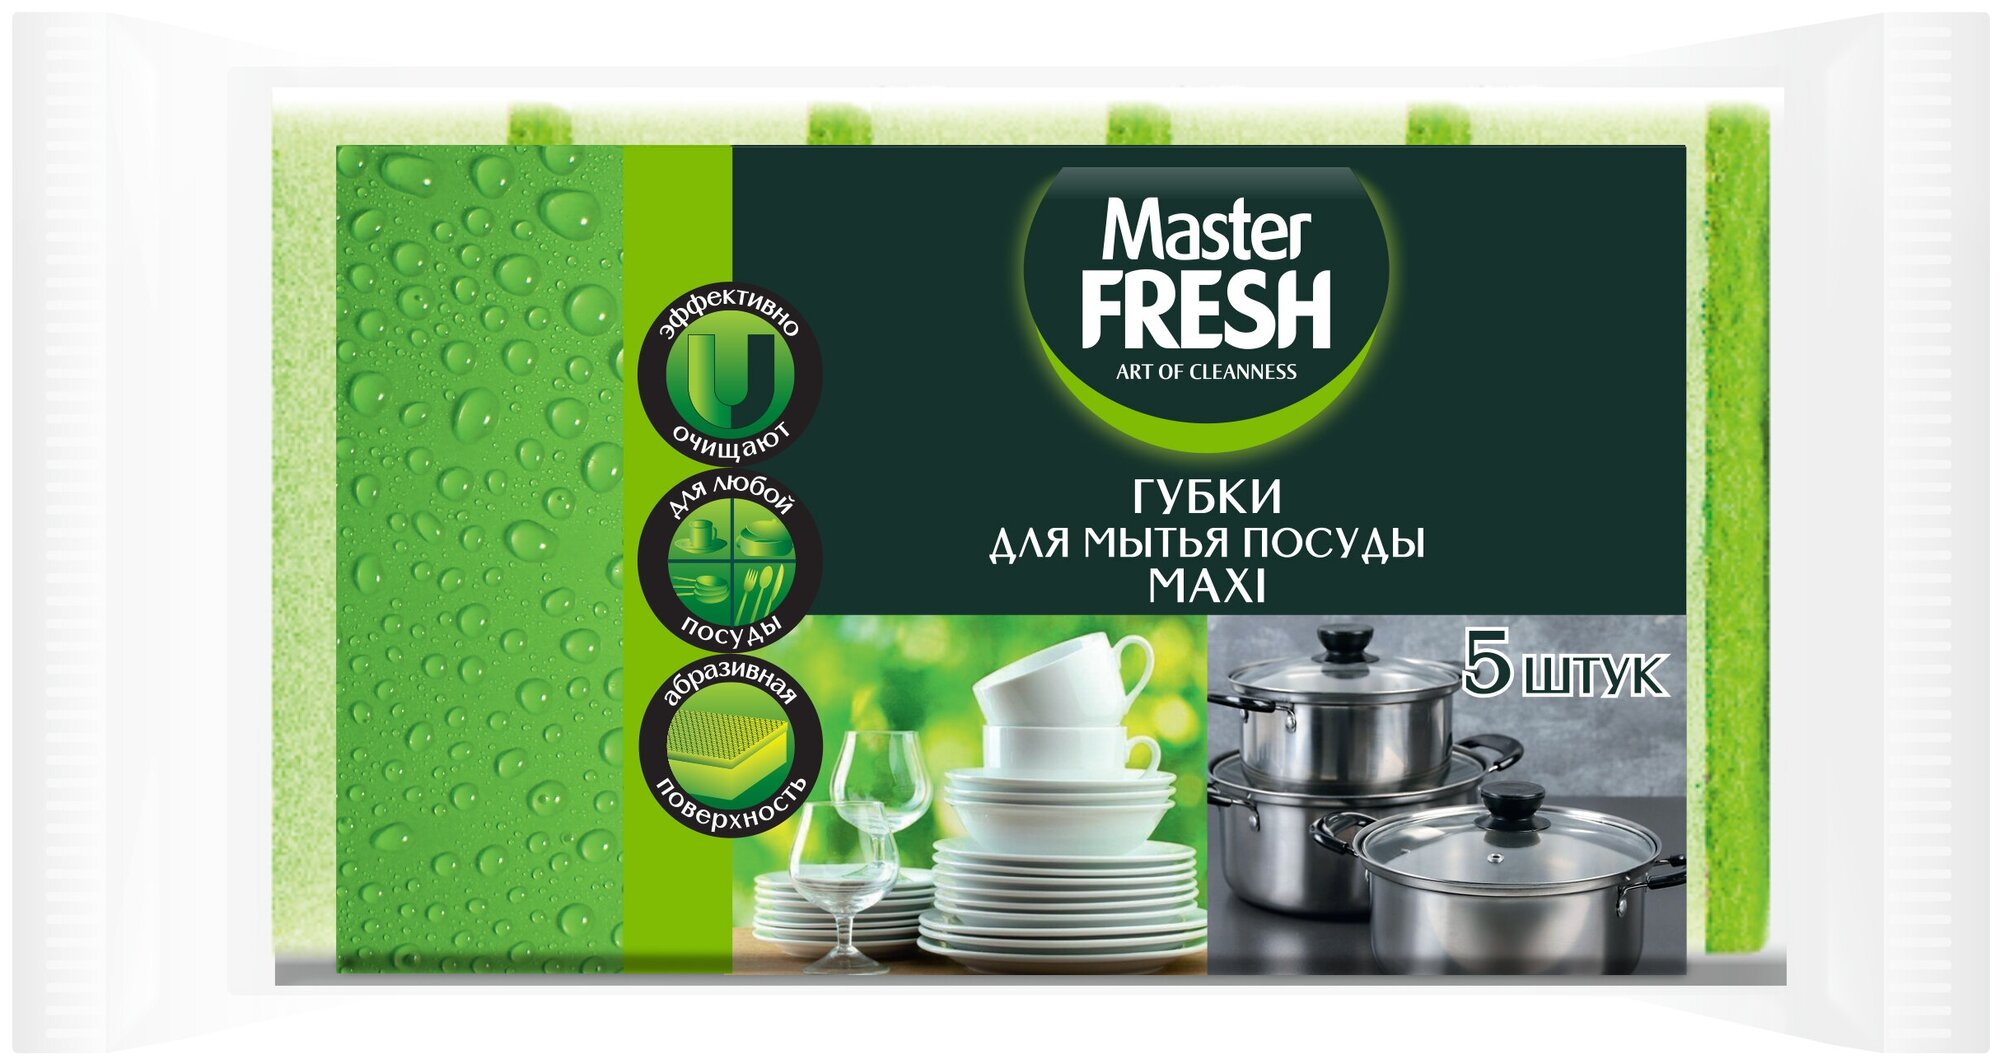 Губки Master Fresh Maxi, 2 упаковки по 5 штук